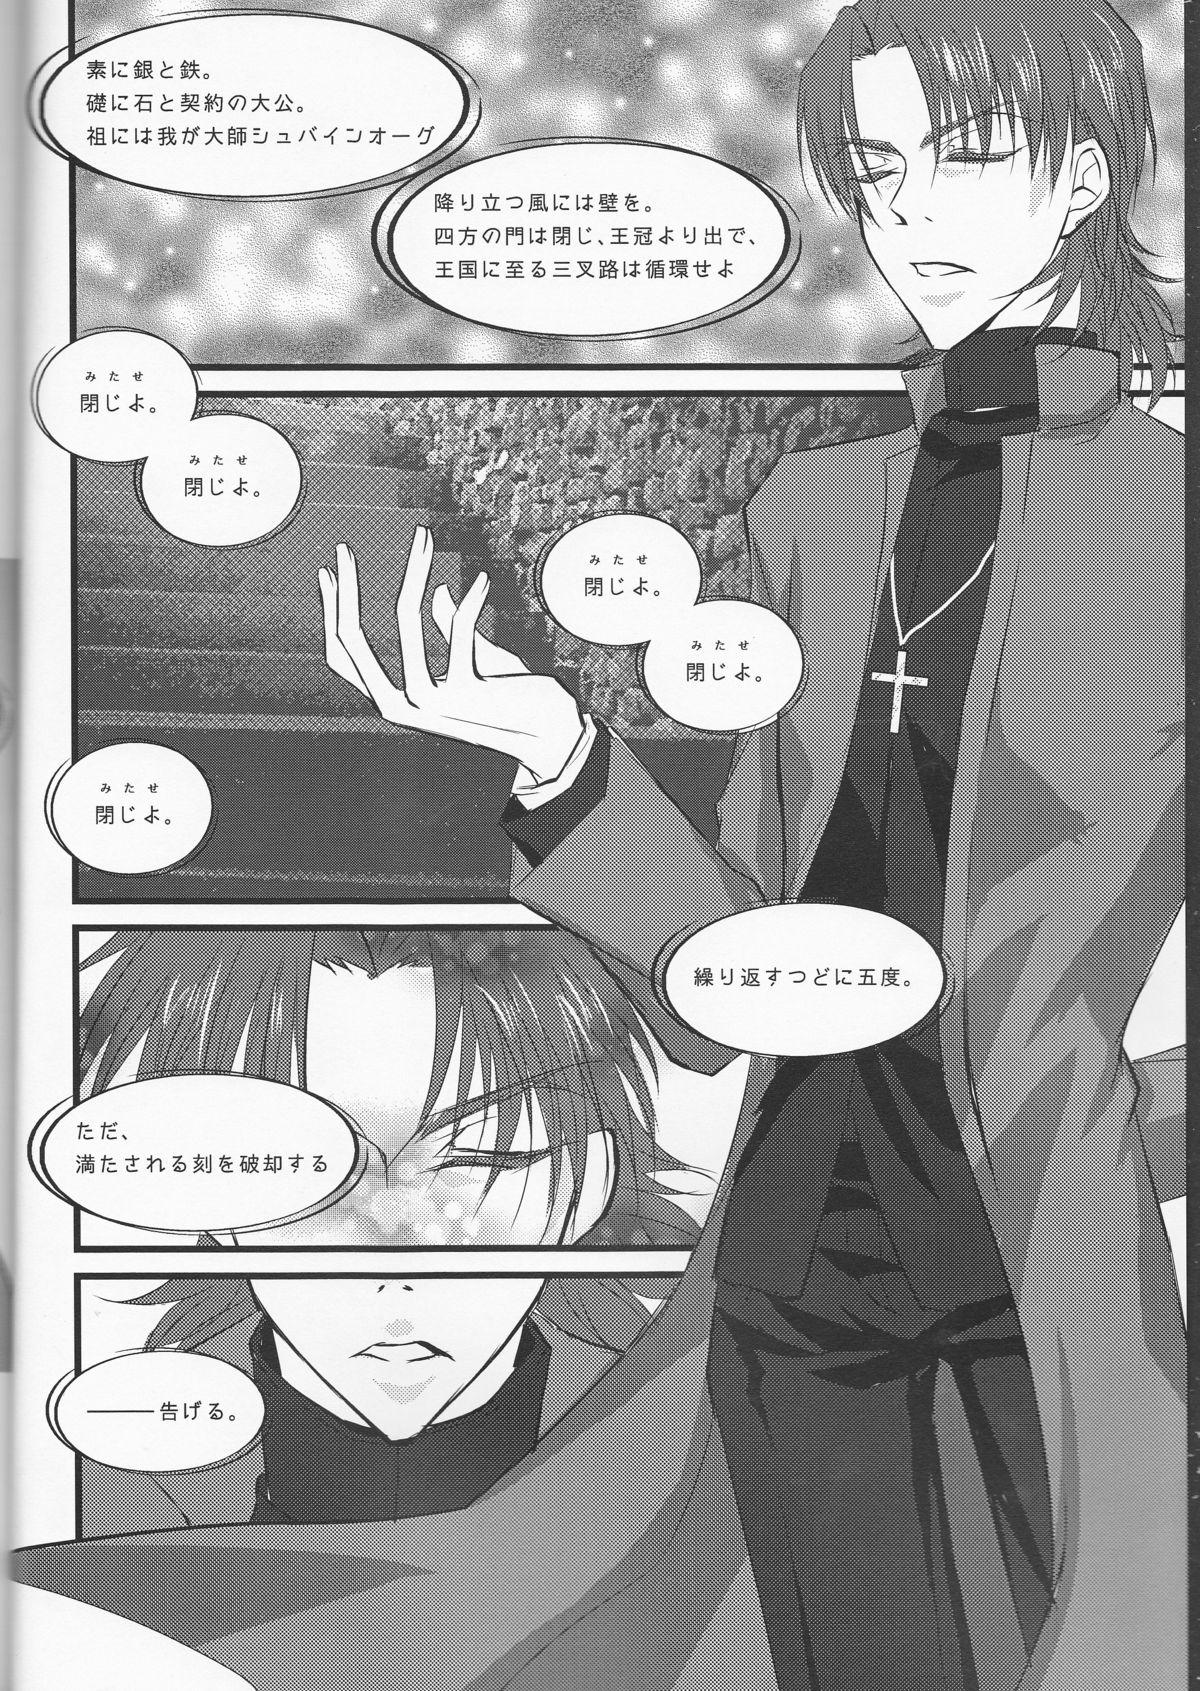 Onlyfans Servant na Kanojo. - Fate zero Gordibuena - Page 4